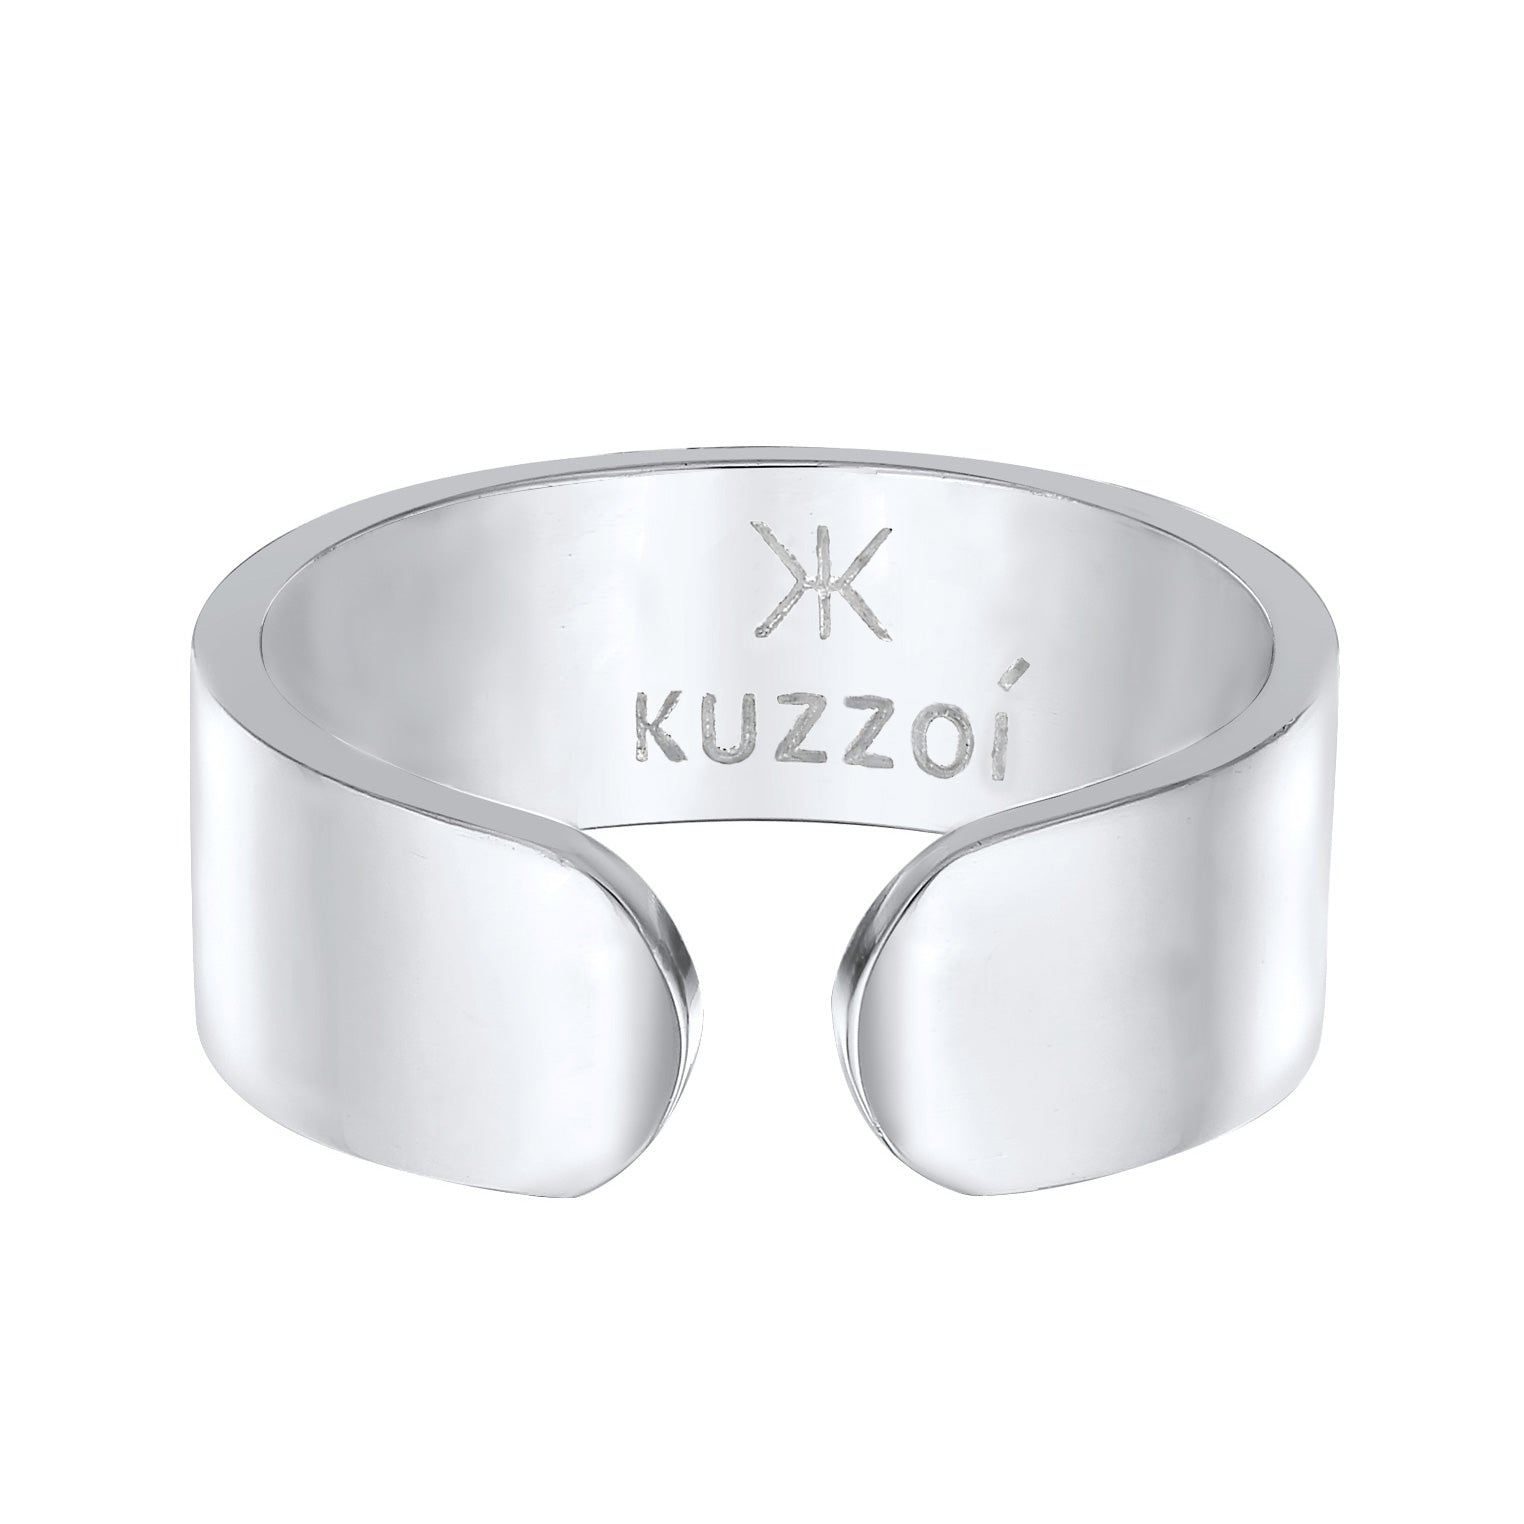 – Open Ring Band Kuzzoi